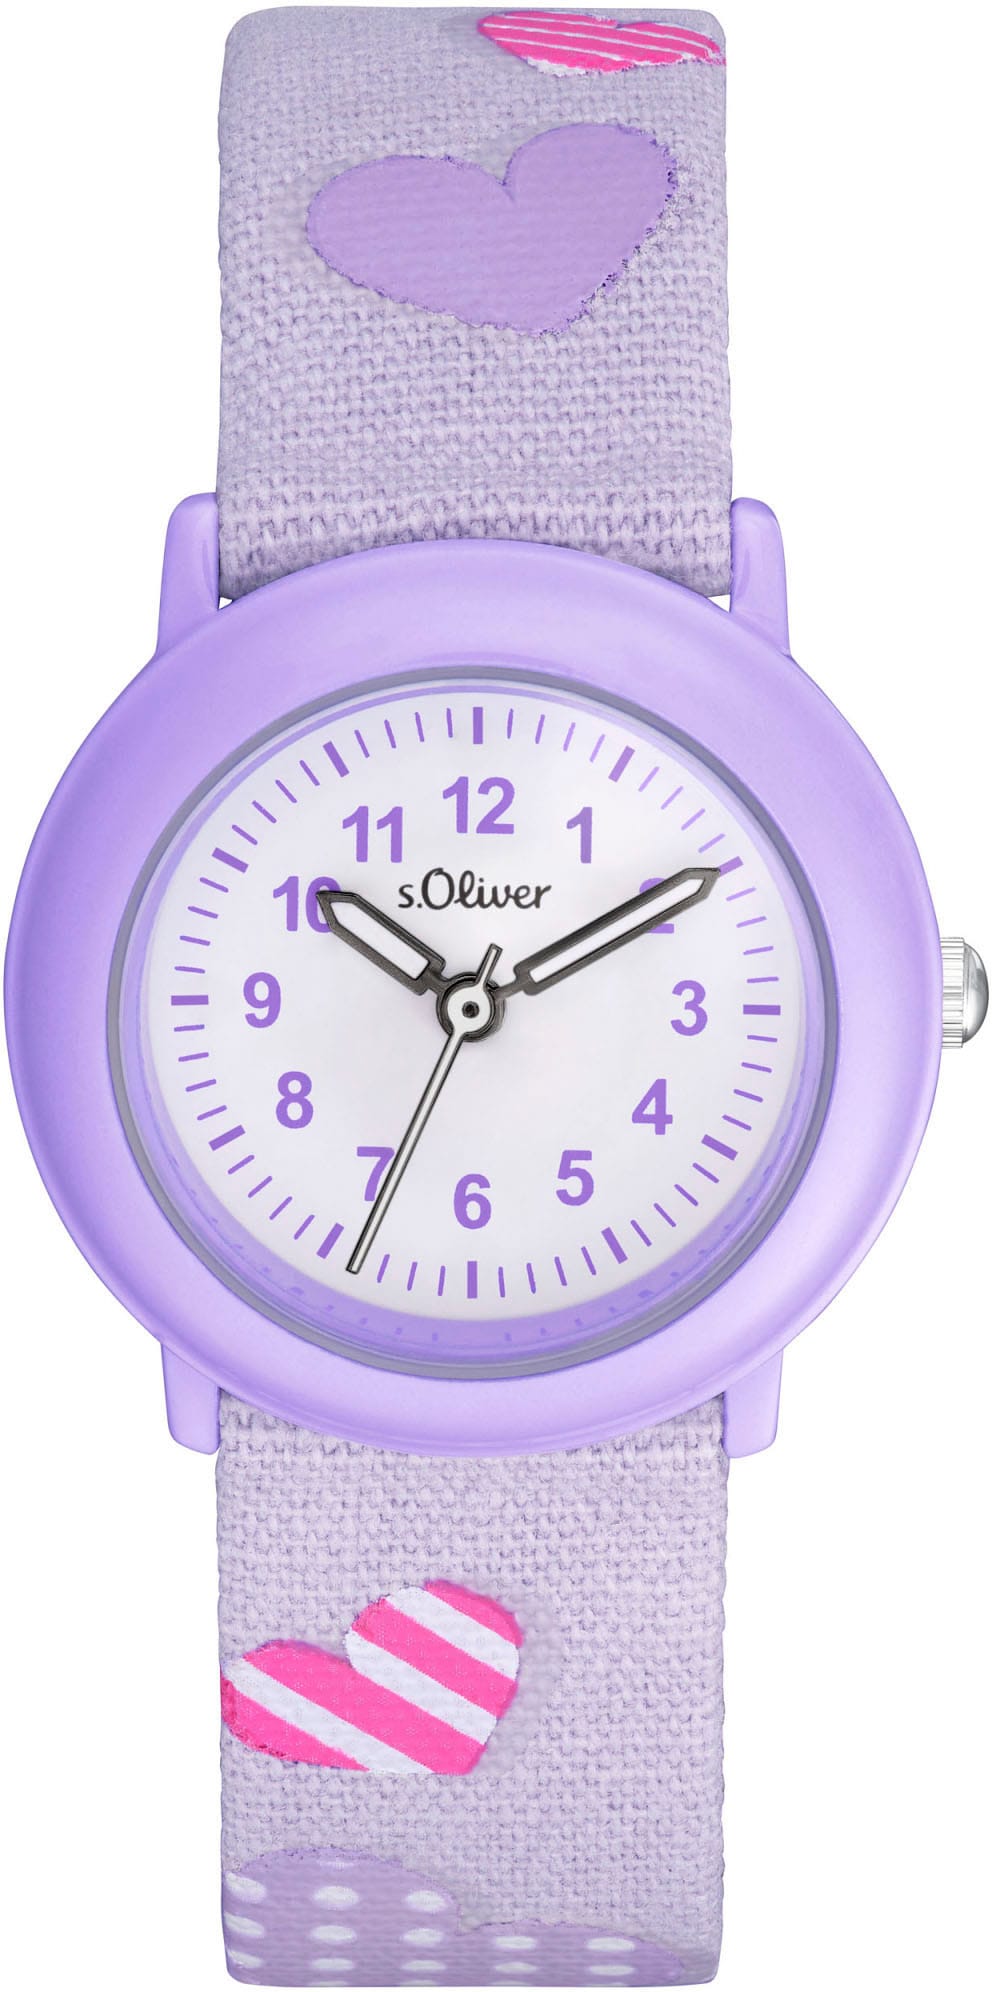 s.Oliver Quarzuhr »2036750«, Armbanduhr, Kinderuhr, ideal auch als Geschenk